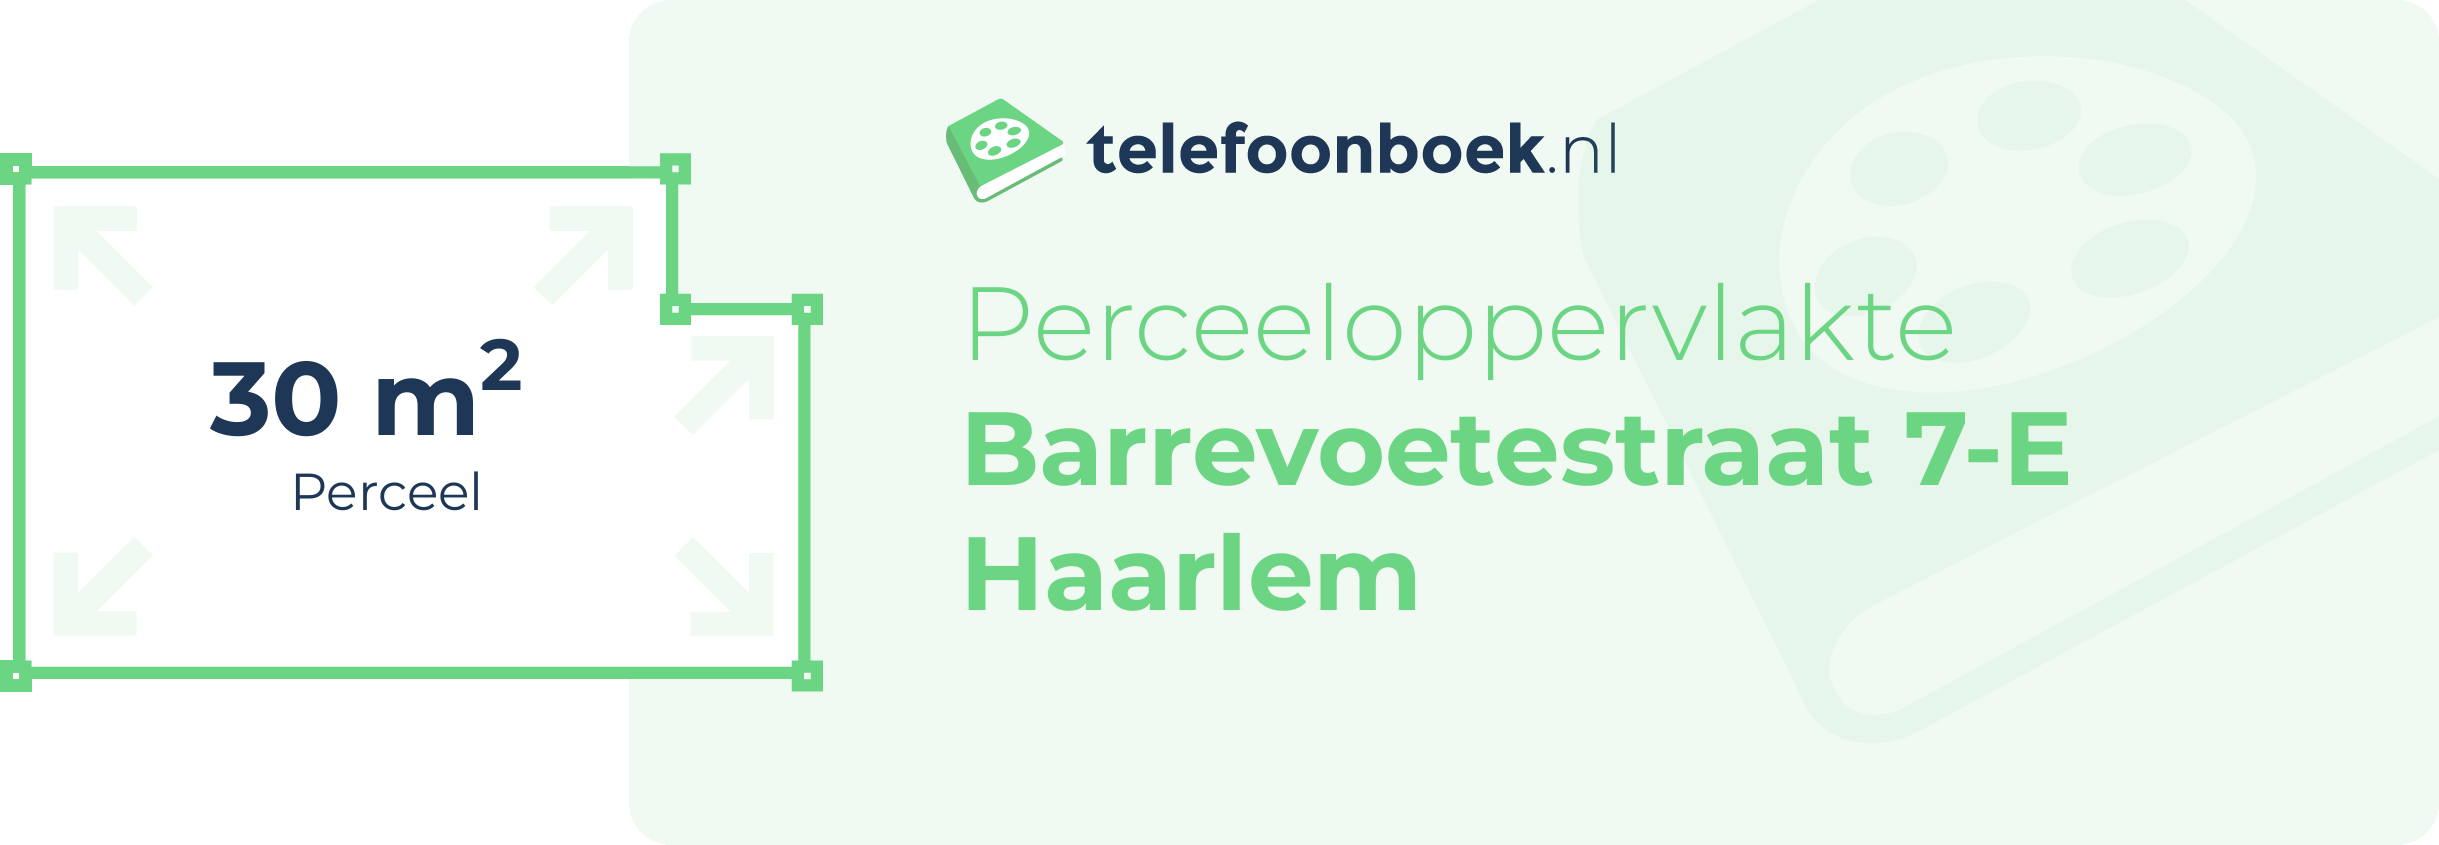 Perceeloppervlakte Barrevoetestraat 7-E Haarlem